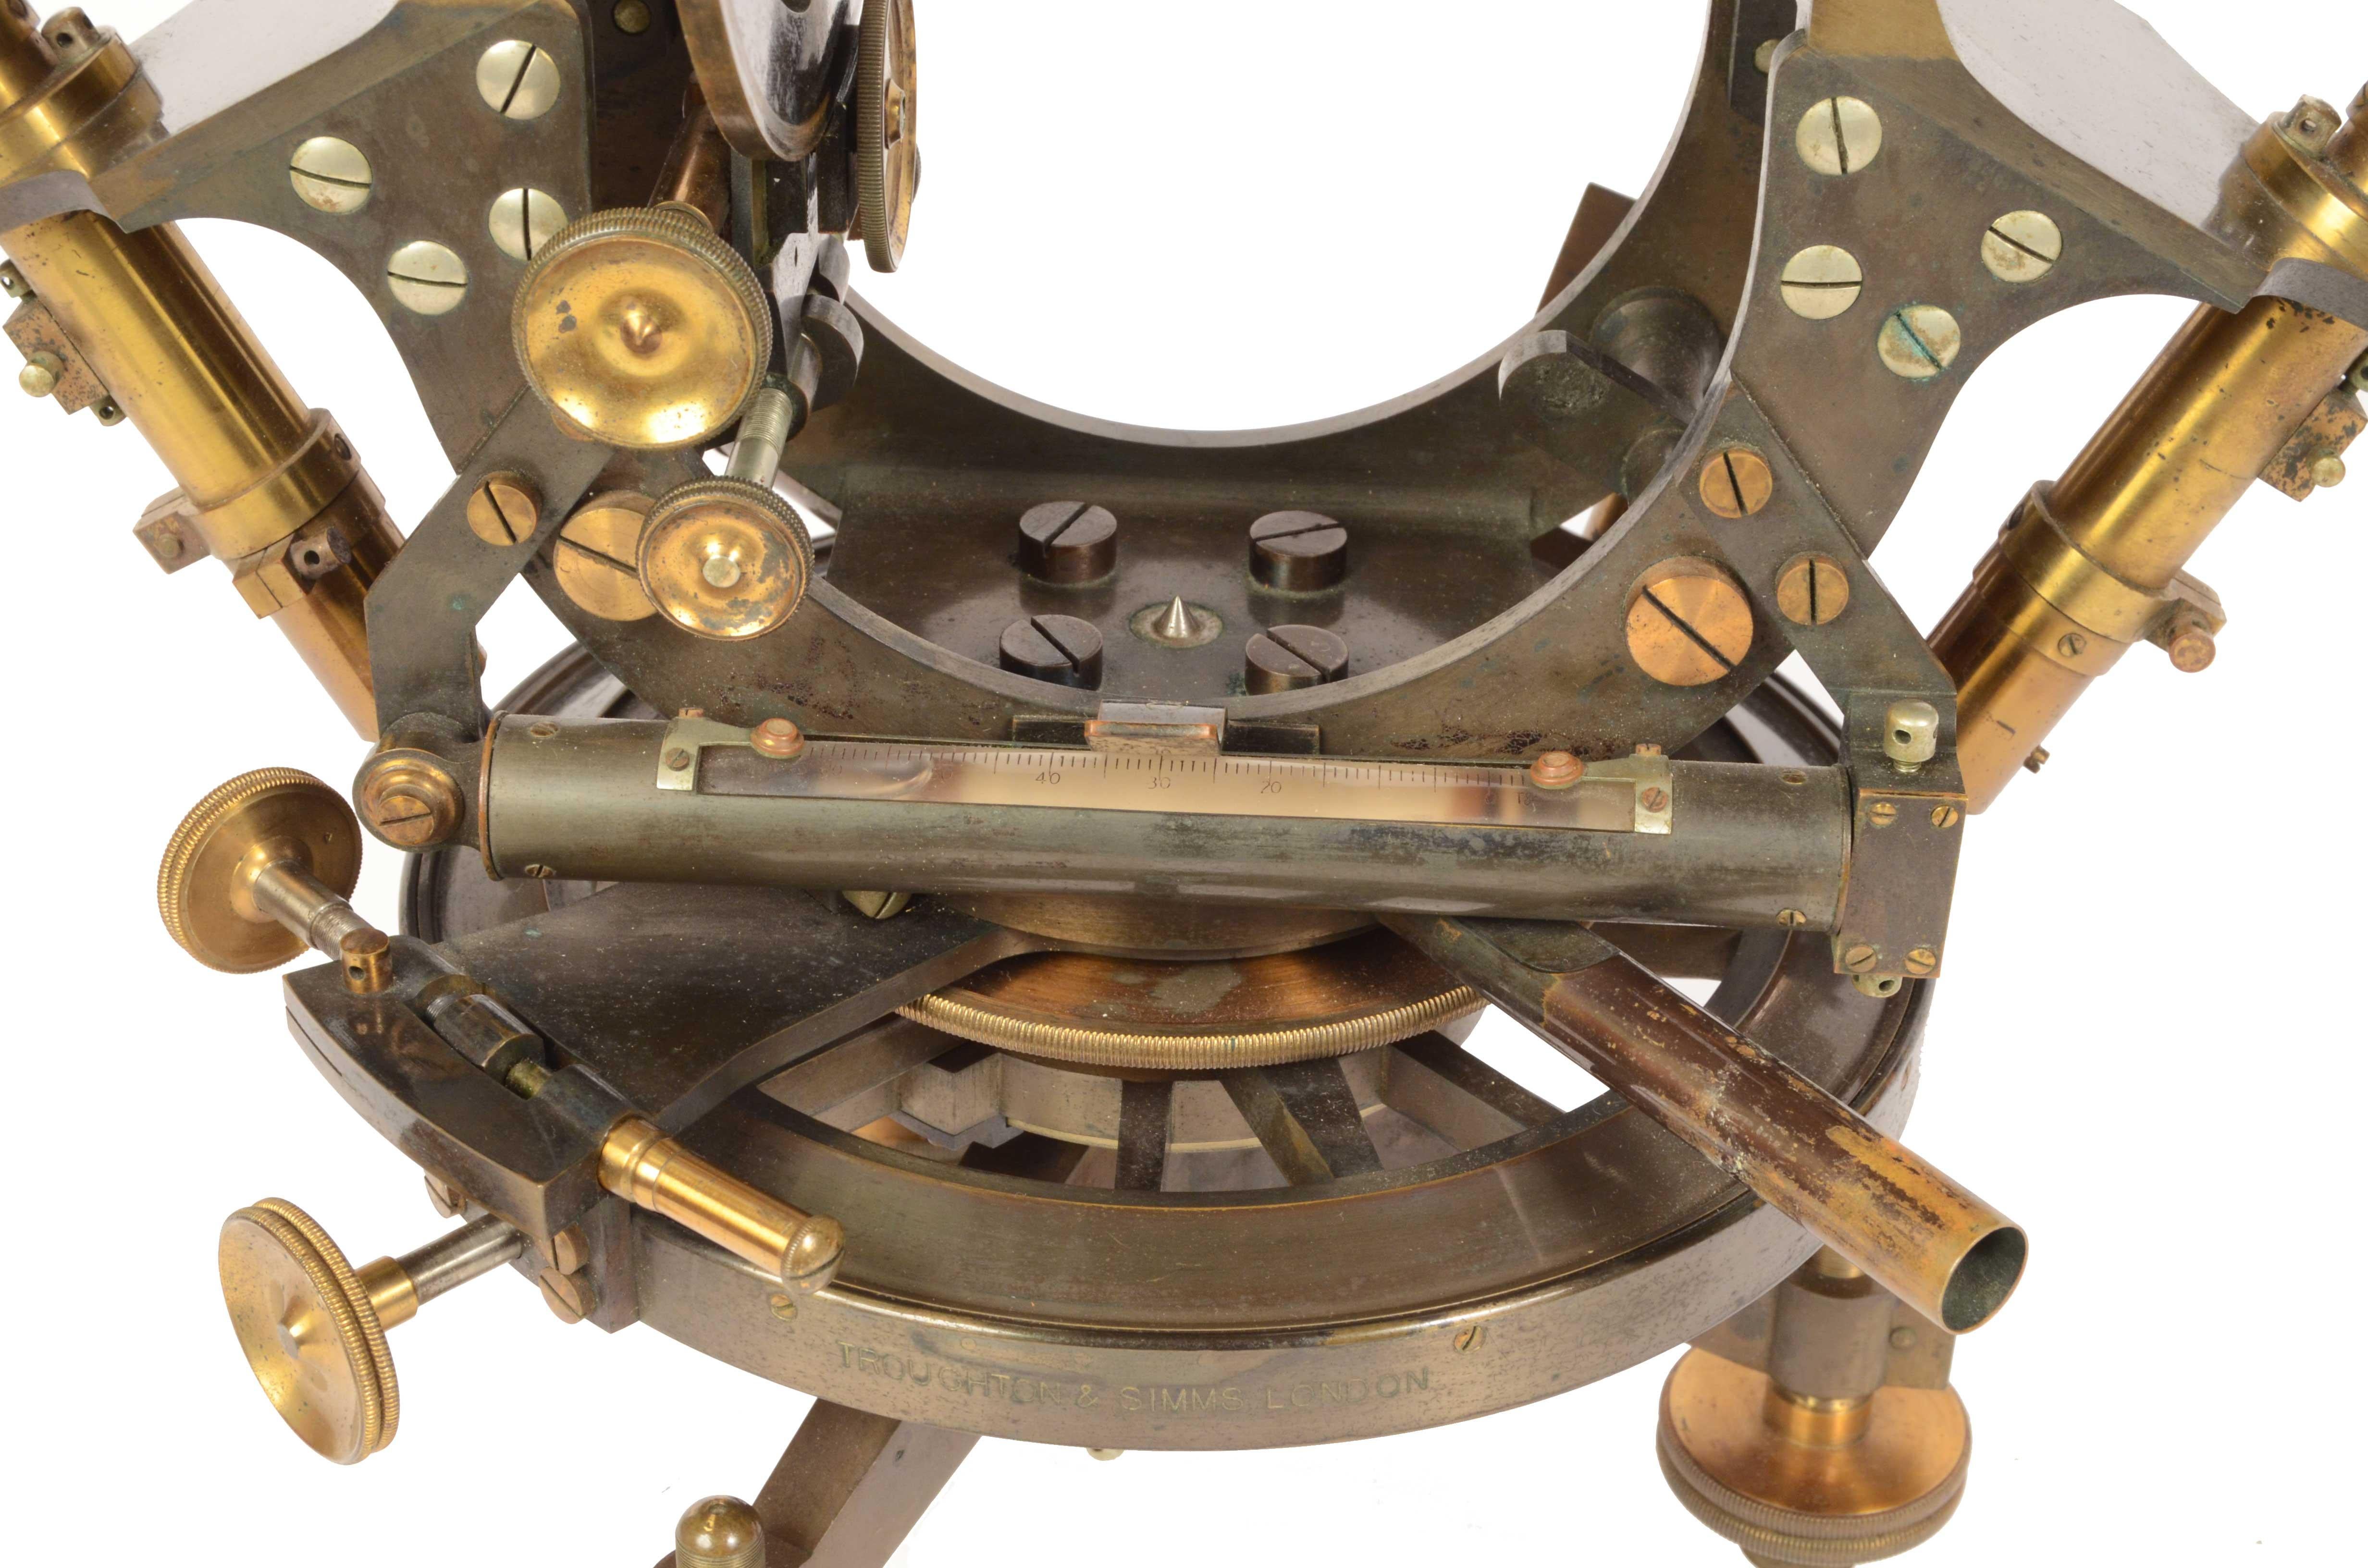 1870s Theodolite Troughton & Simms Antique Scientific Instrument of Measurement 8